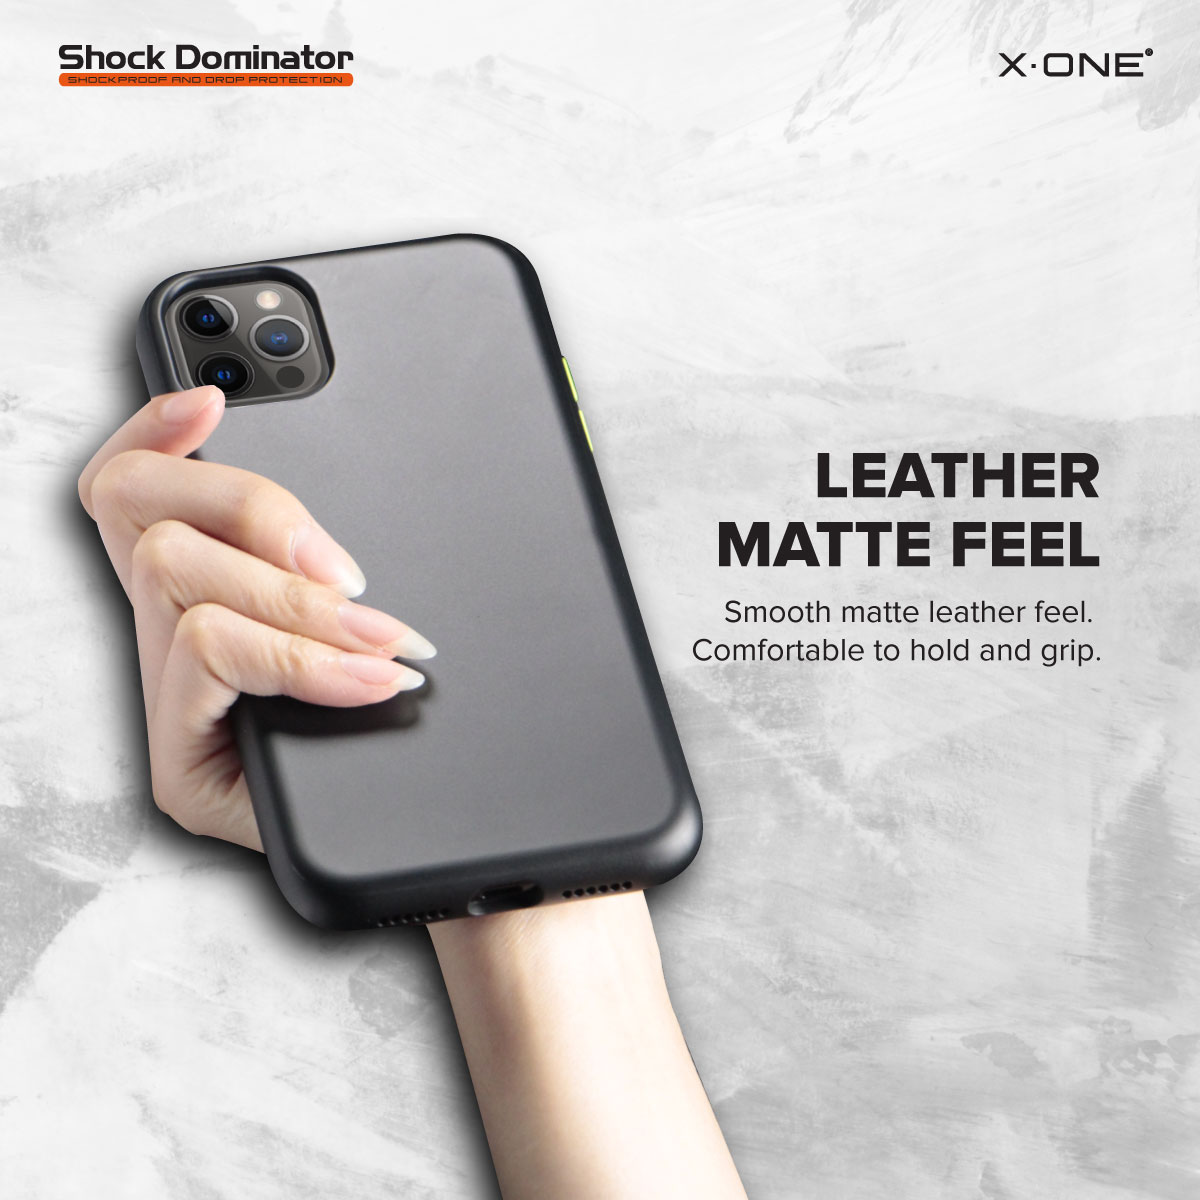 Leather Matte Feel